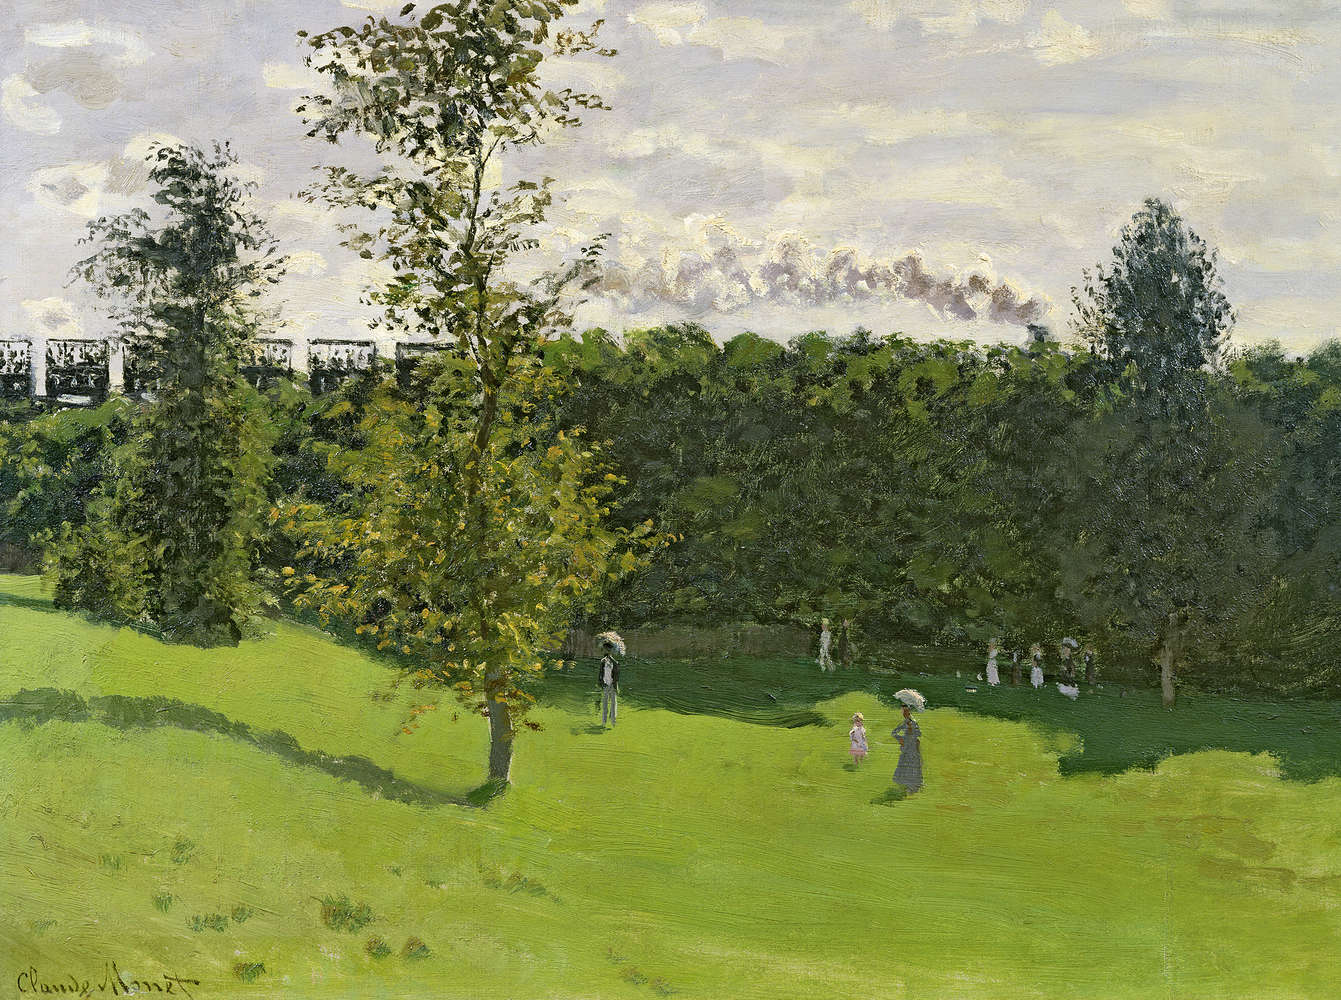             Muurschildering "Trein op het platteland" van Claude Monet
        